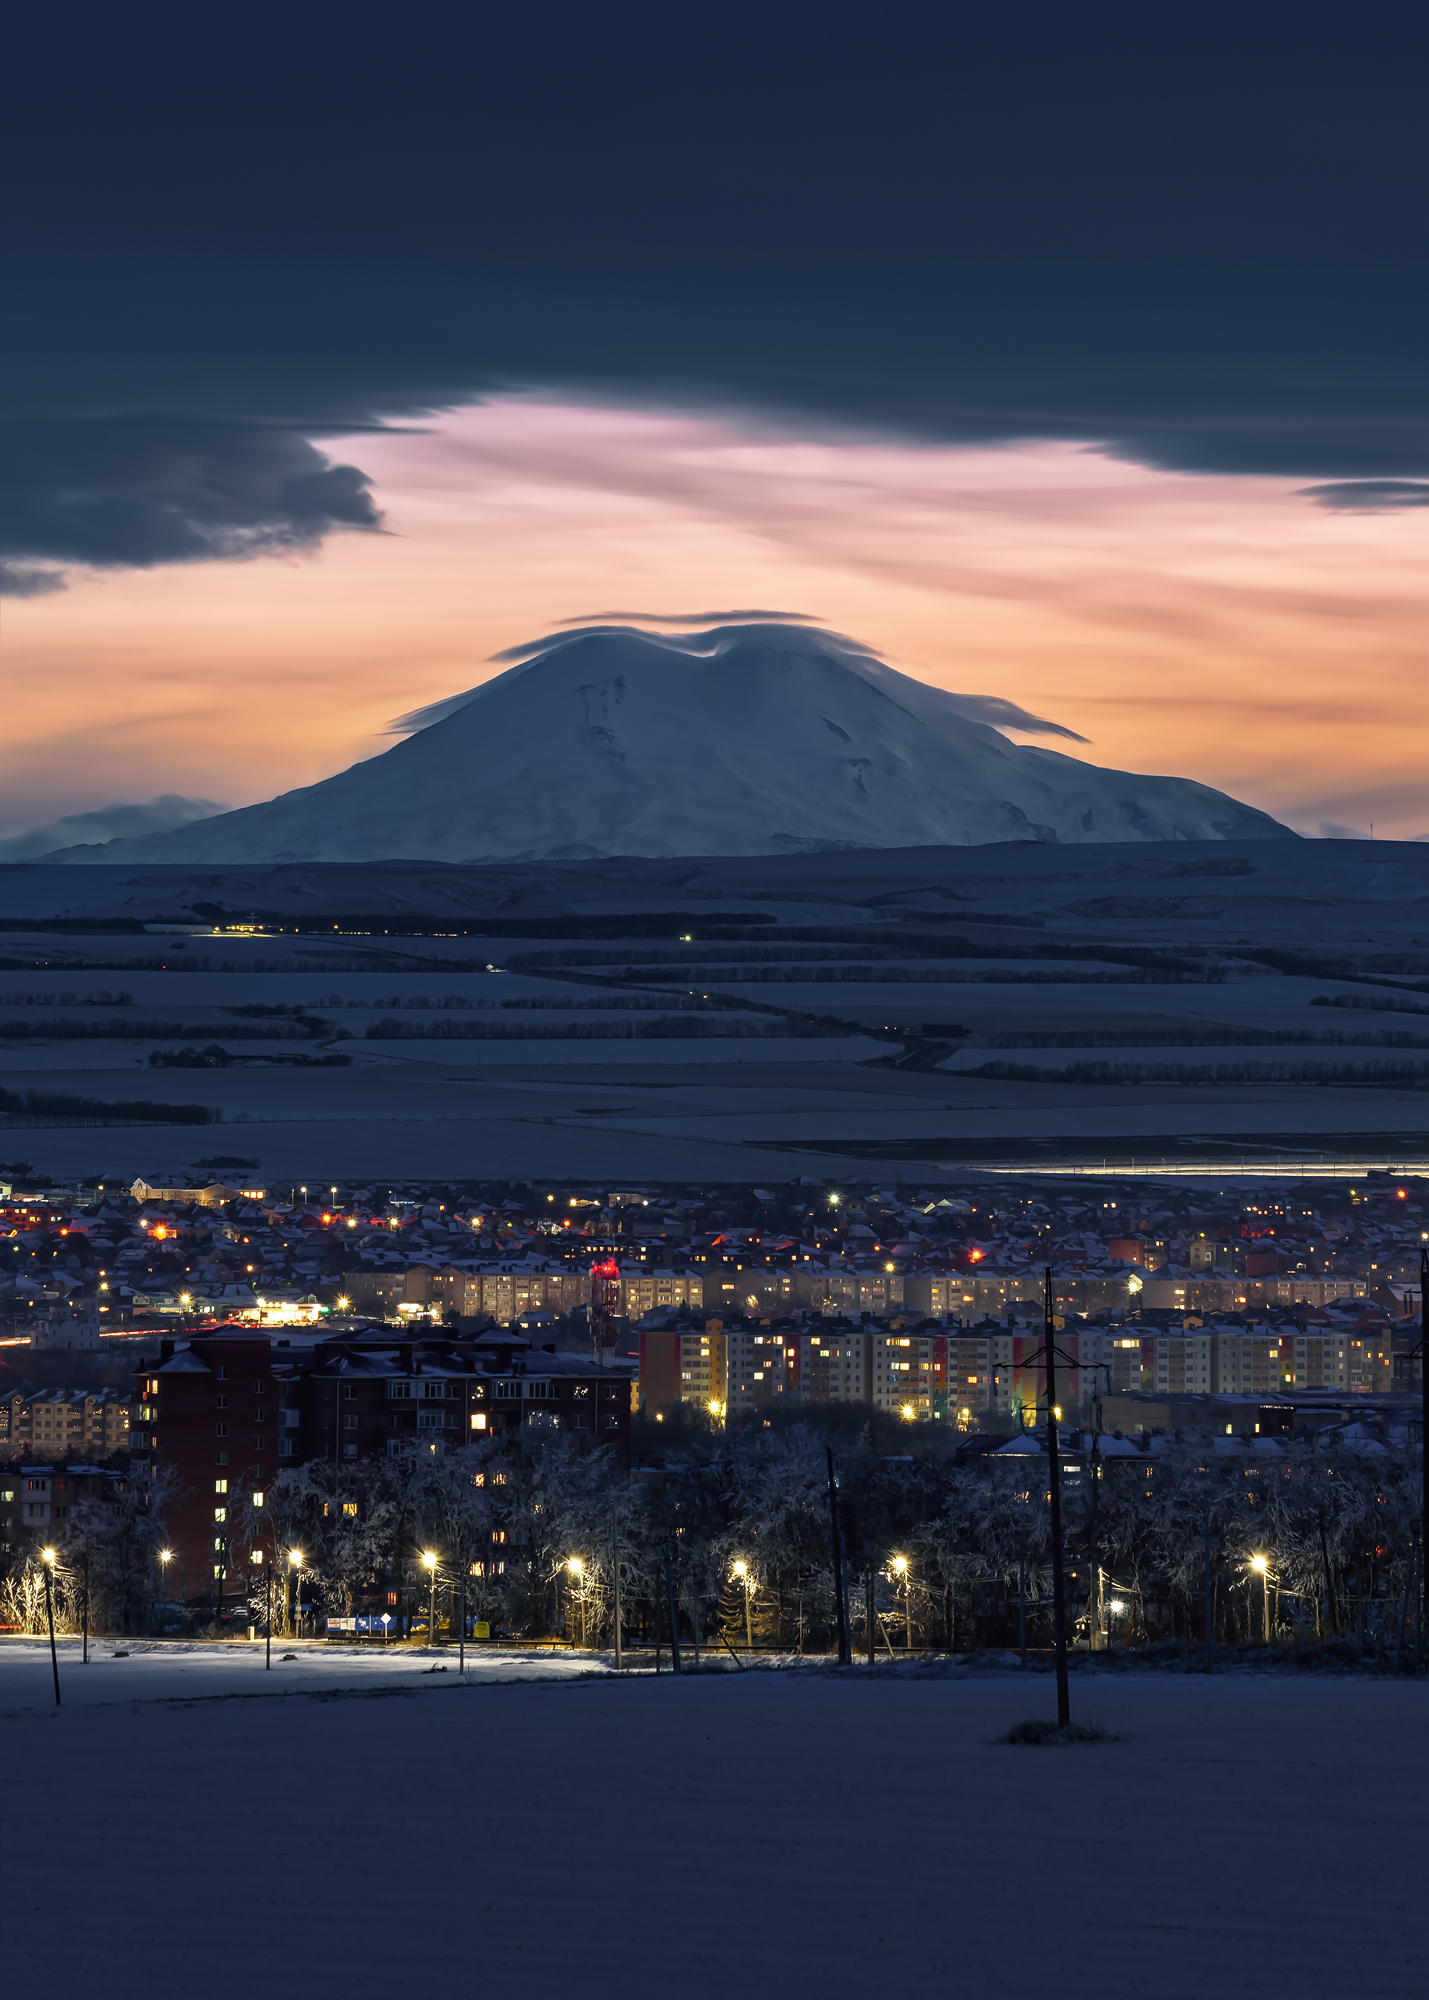 кавказ, вечер, закат, зима, ночной город, город, ессентуки, эльбрус, гора, Zakharov Armen